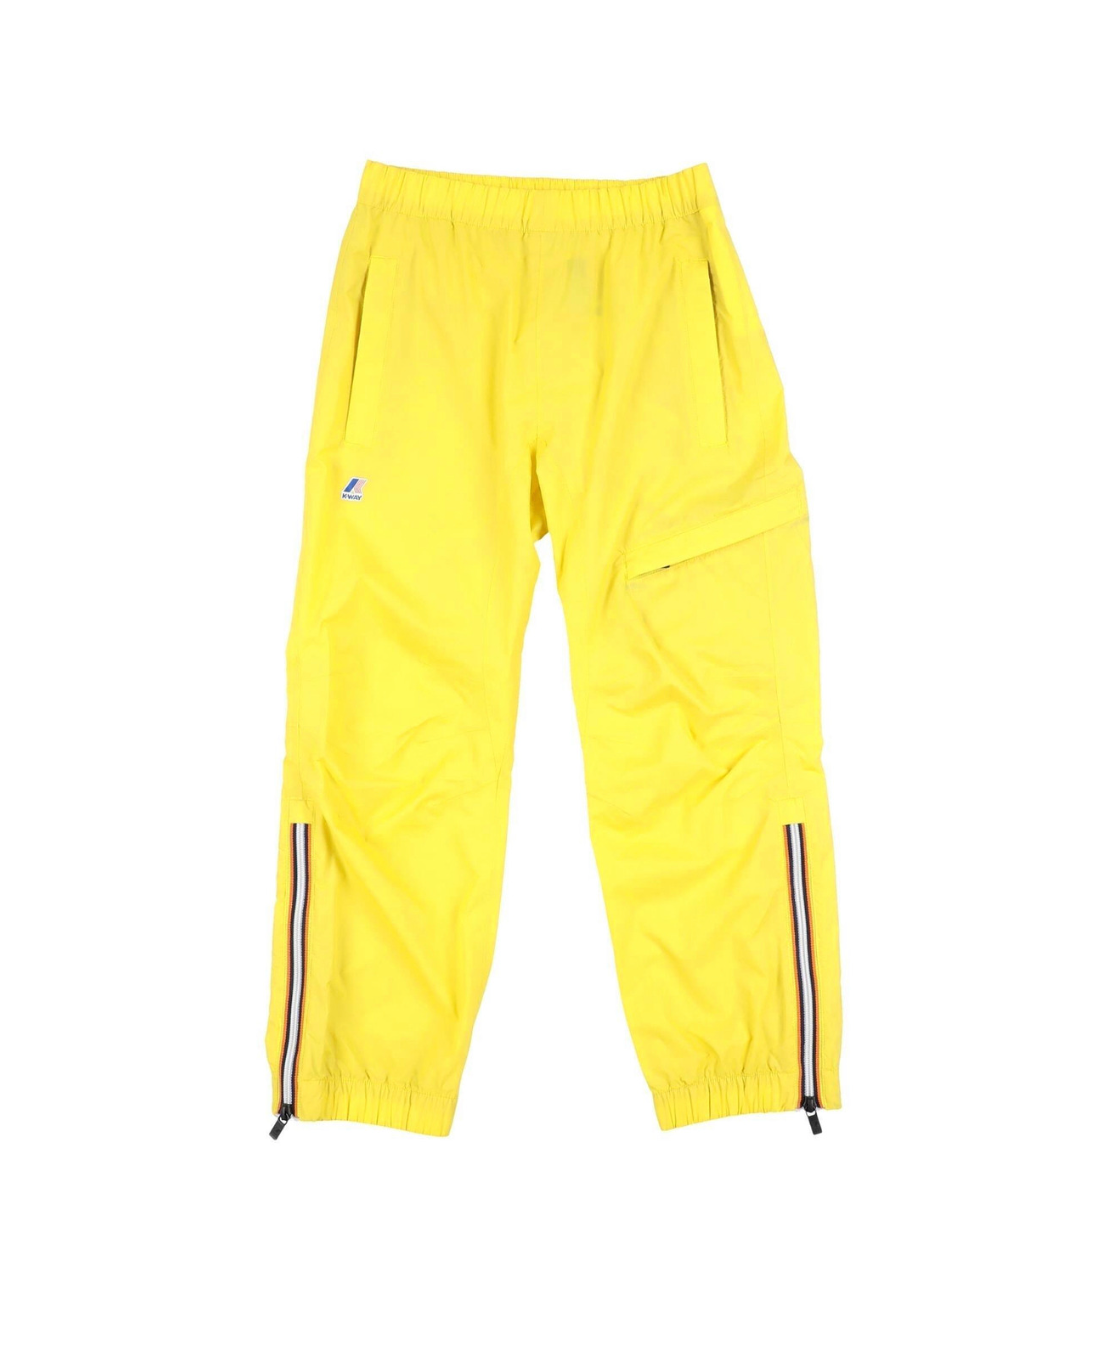 K-WAY - Pantalon imperméable jaune - 8 ans